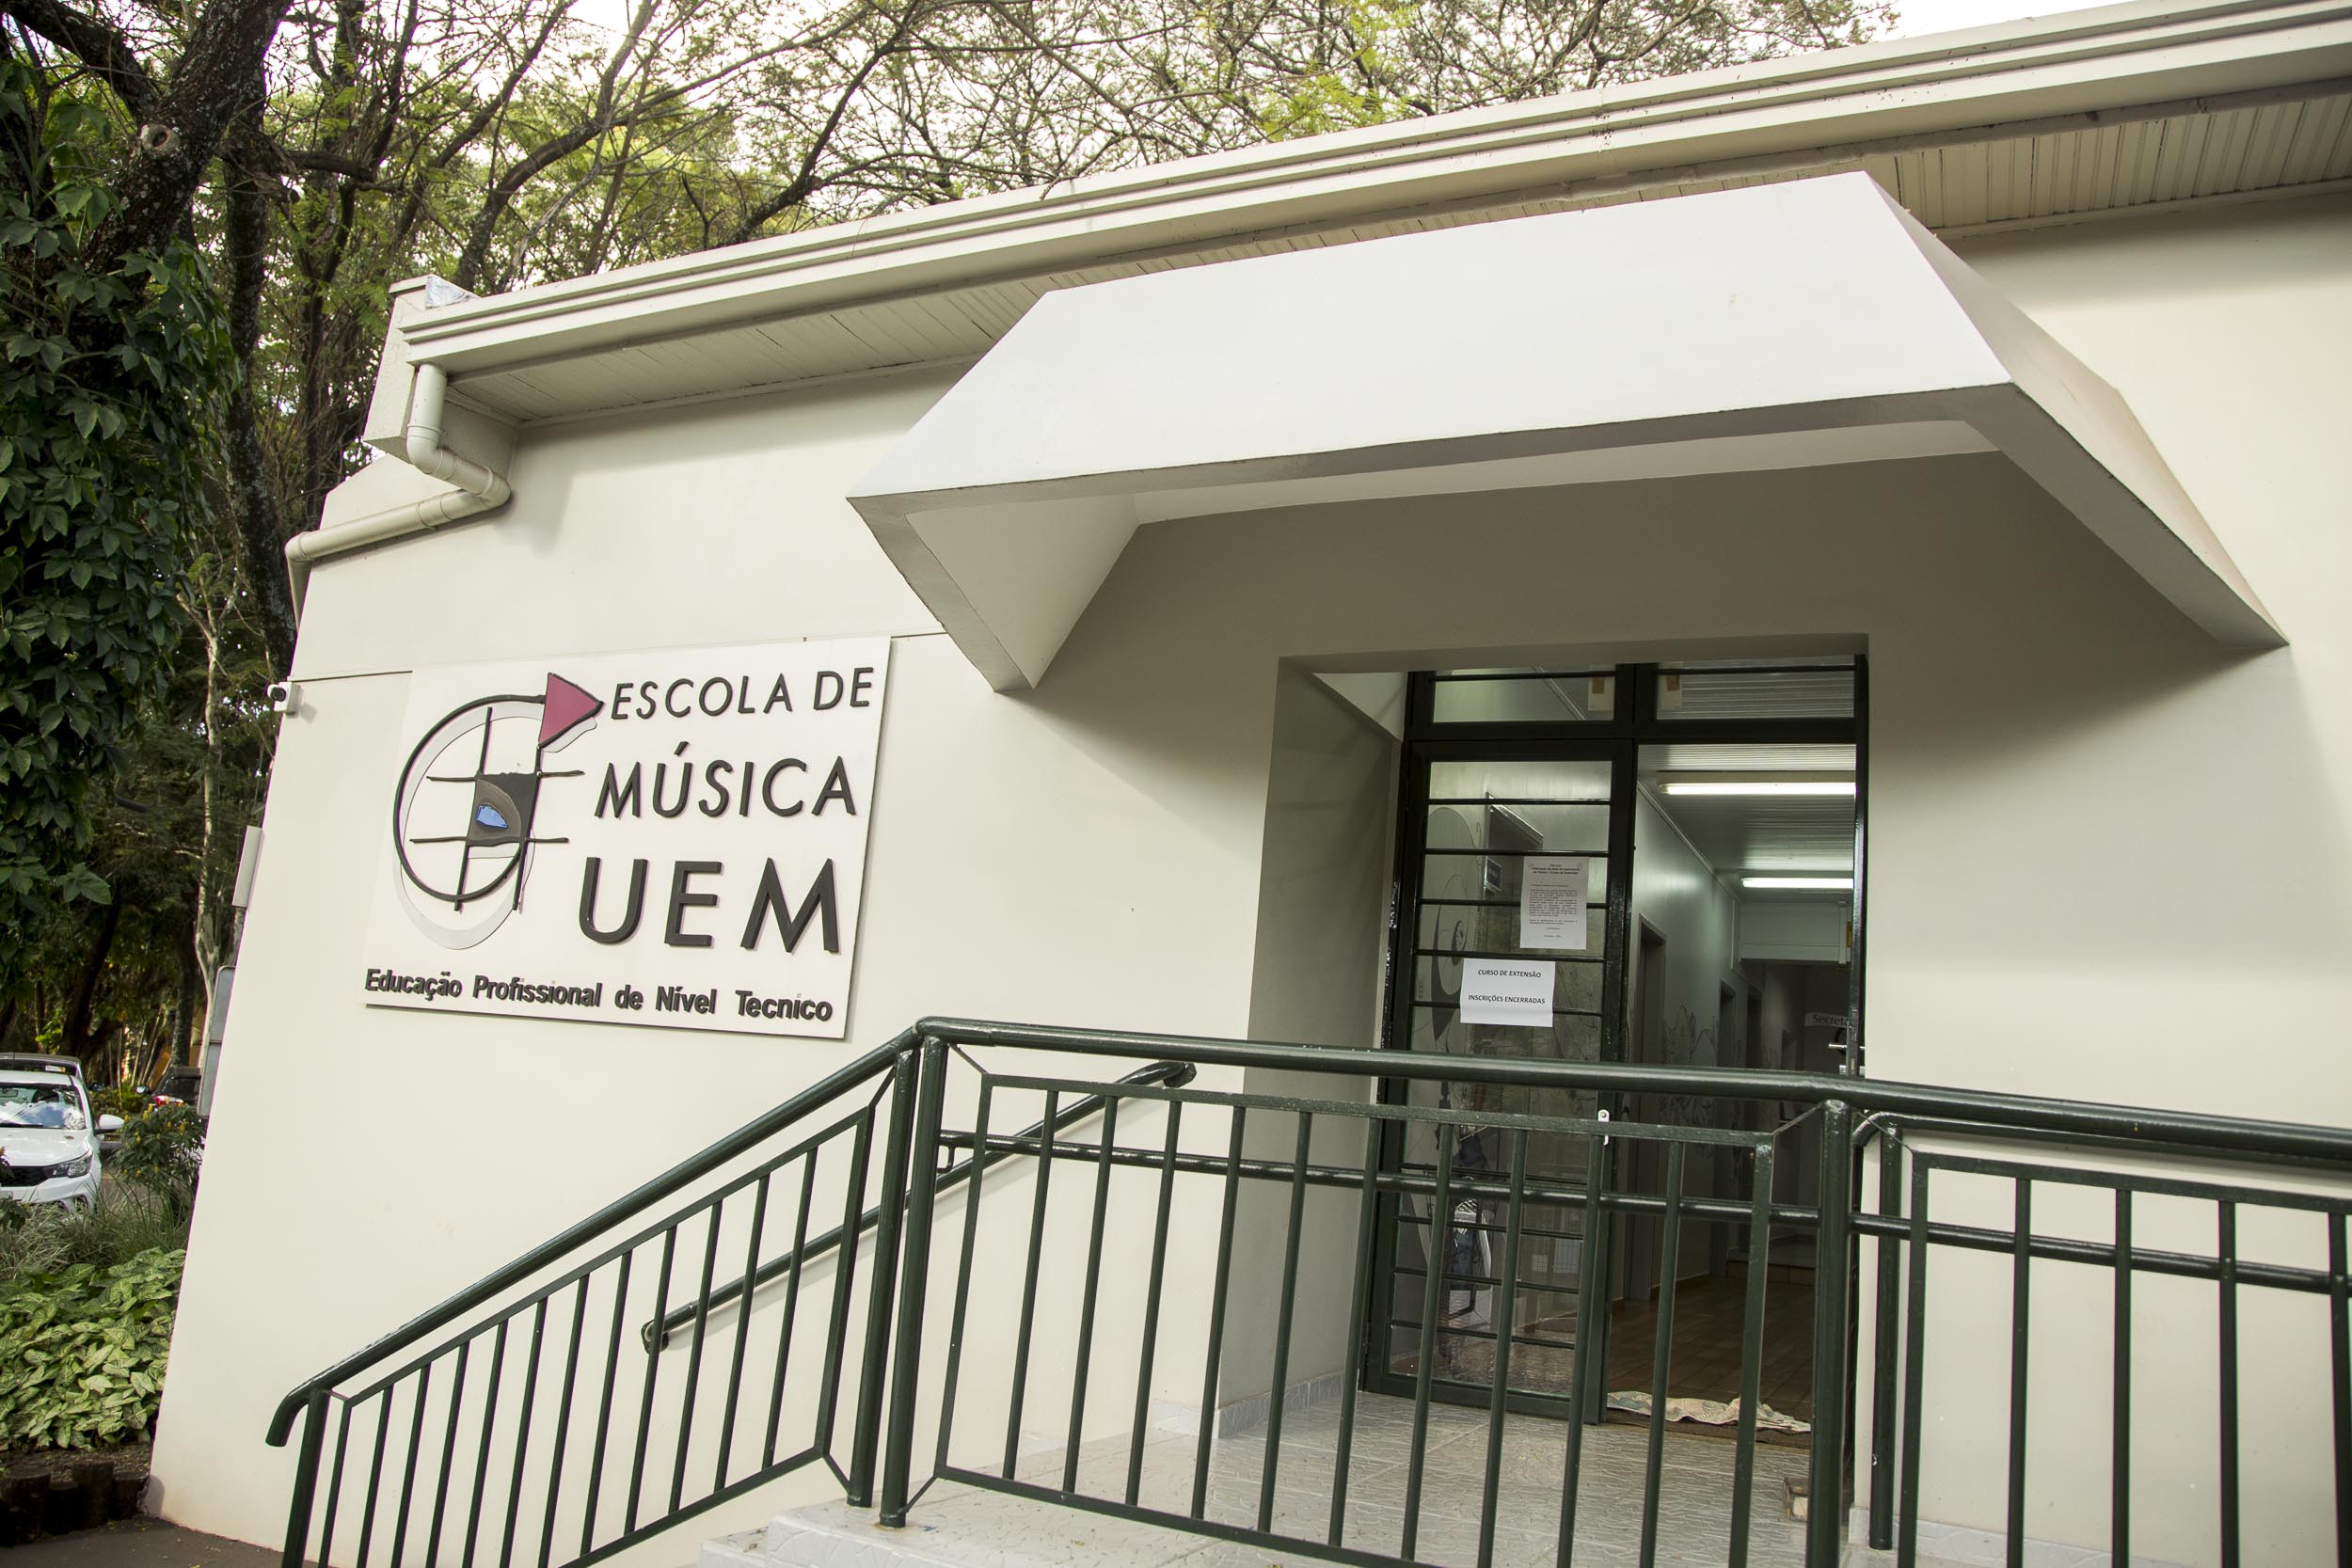 2019 03 26 Escola de Musica UEM MG 4186 1